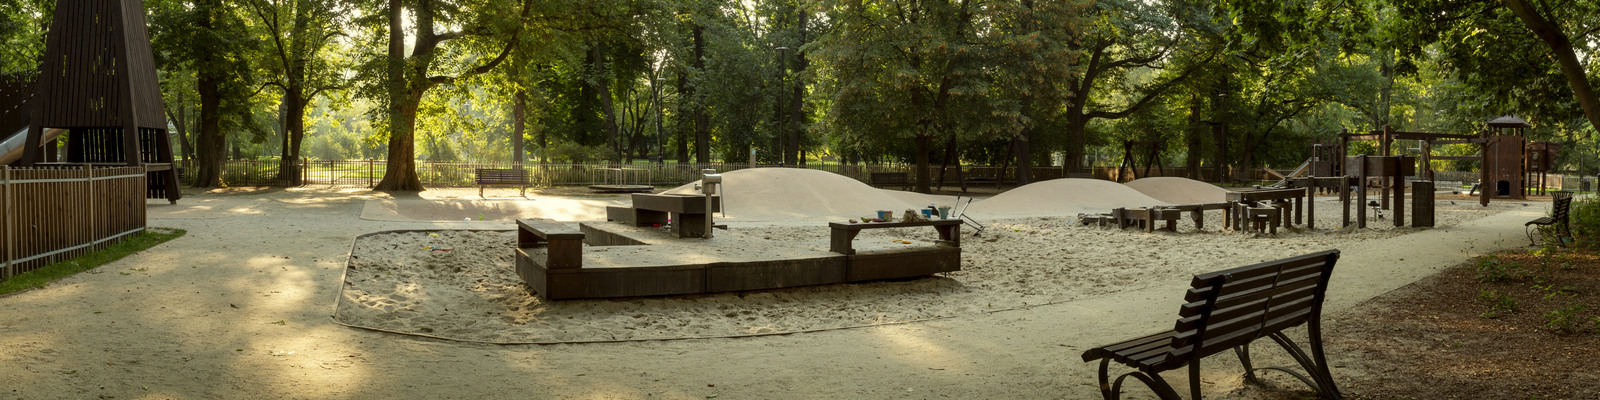 Lekplats med träutrustning i en stadspark